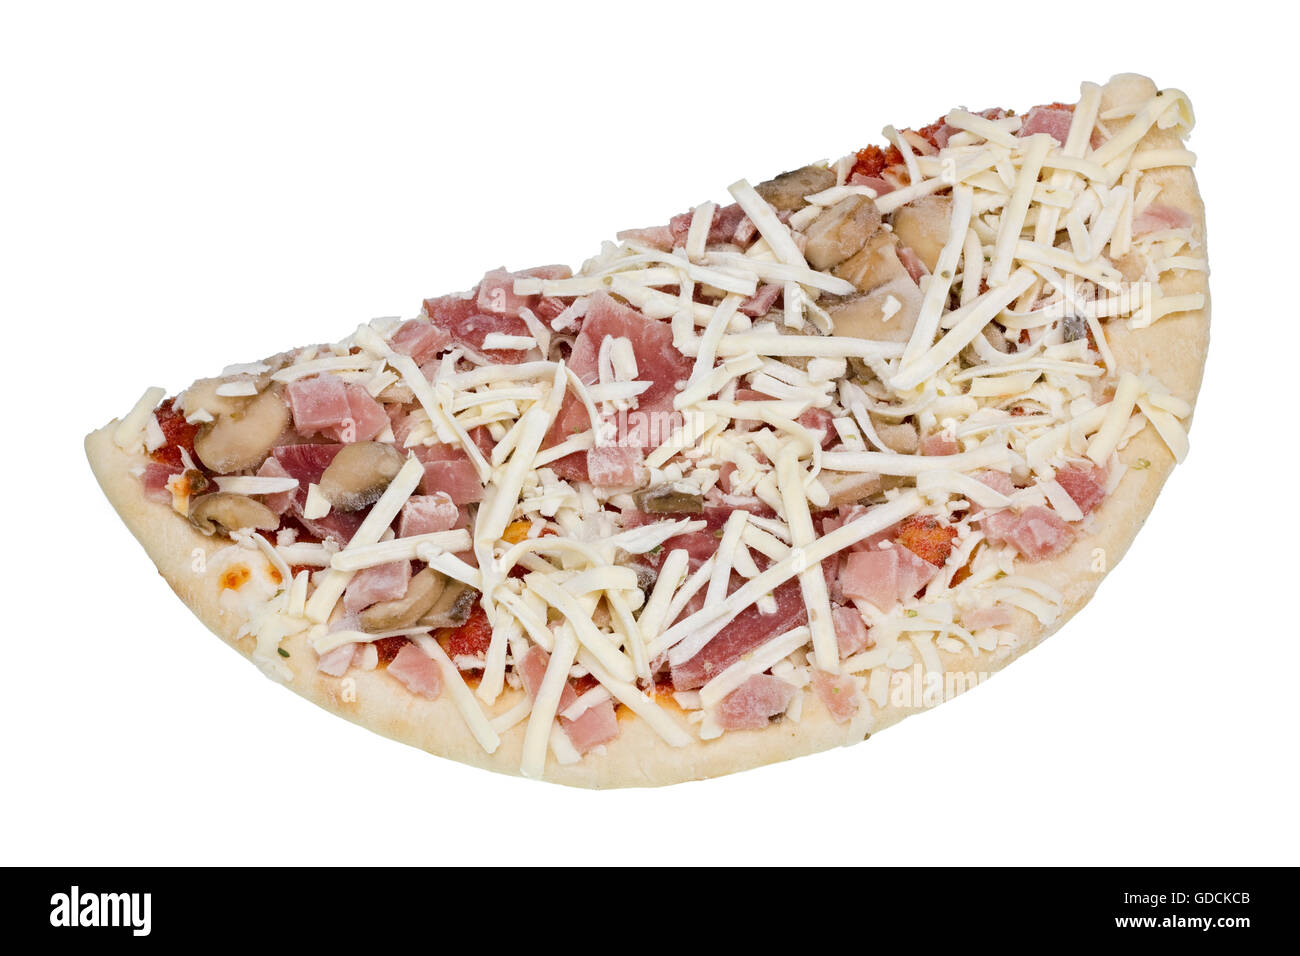 La moitié de la production de masse congelée pizza aux champignons, jambon, mozzarella et un un paprika. Isolated on white Banque D'Images